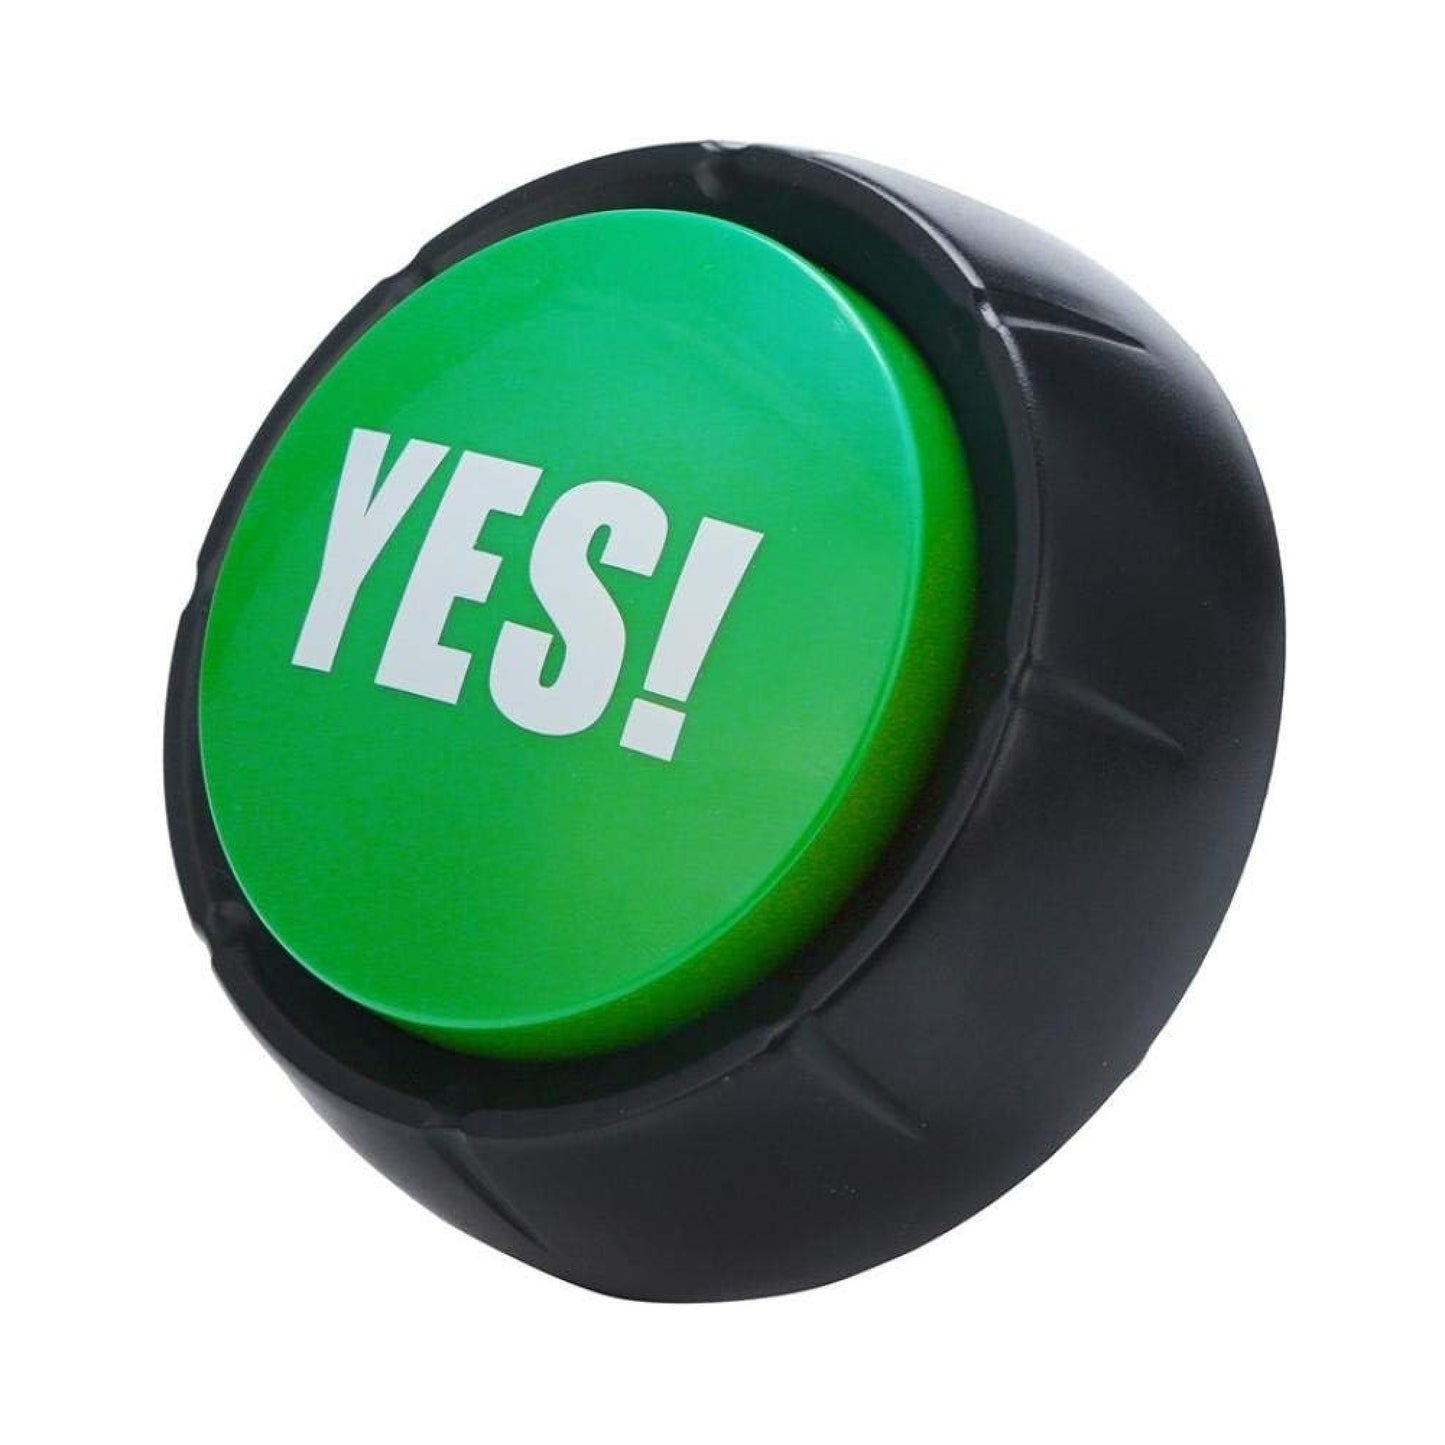 Botón entretenido ¡YES! con sonido "el gran boton verde"